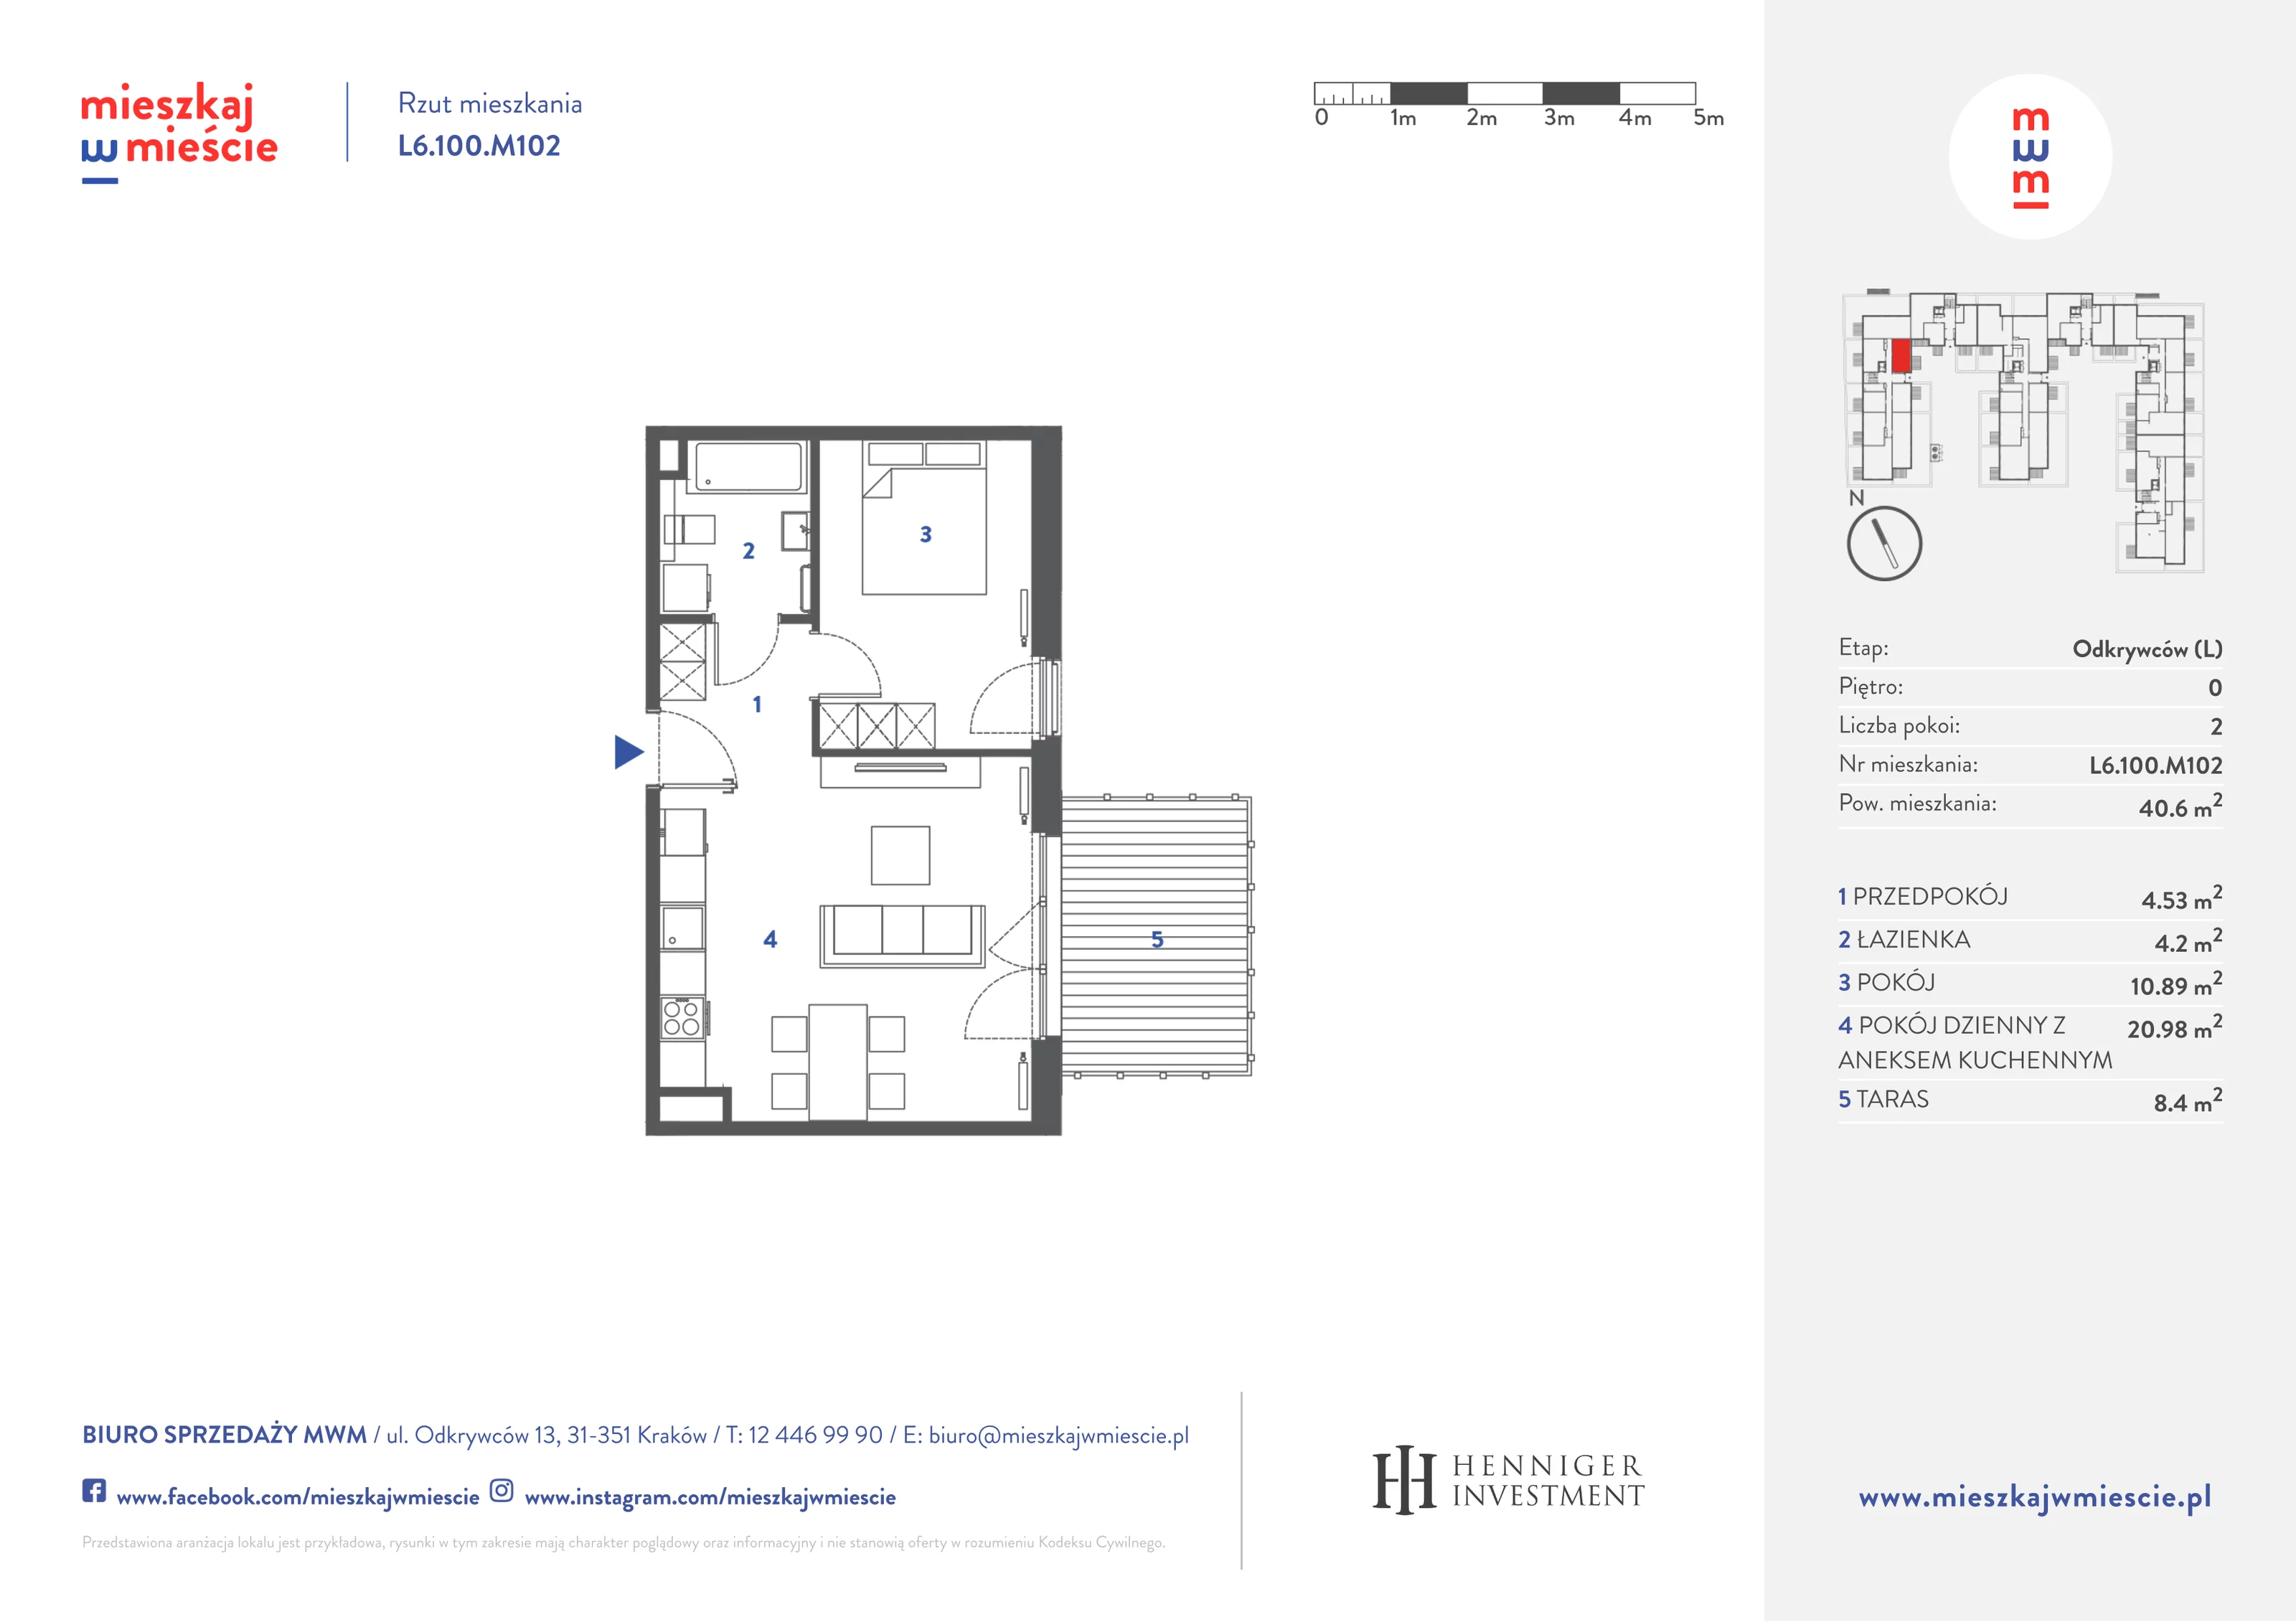 Mieszkanie 40,75 m², parter, oferta nr L6.100.M102, Mieszkaj w Mieście - Odkrywców L, Kraków, Bronowice, ul. Wizjonerów